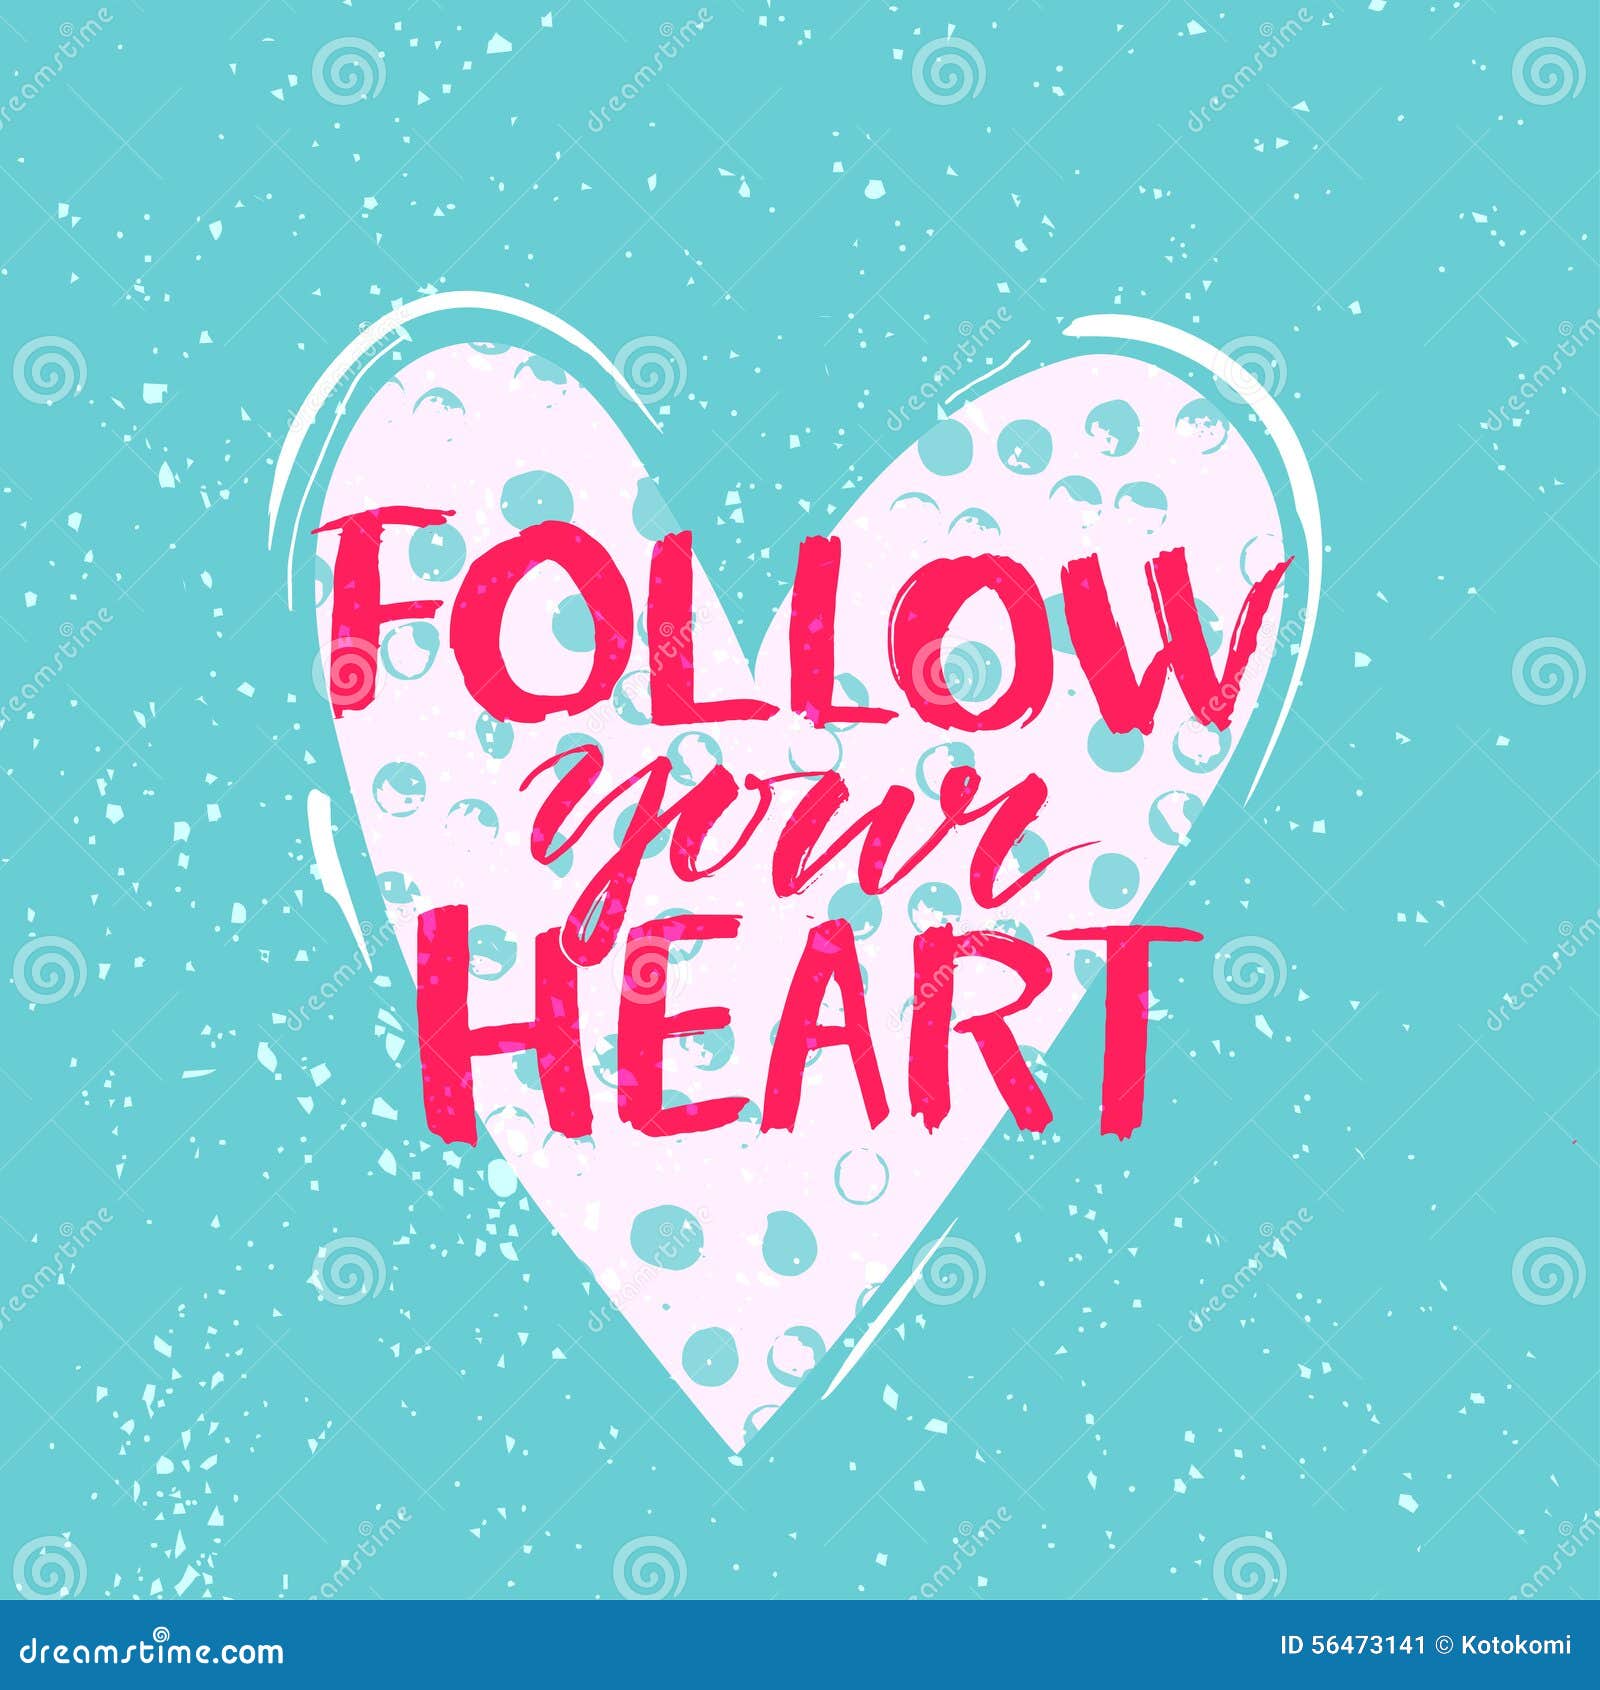 Follow Your Heart - Modern Calligraphy Phrase Stock Vector 